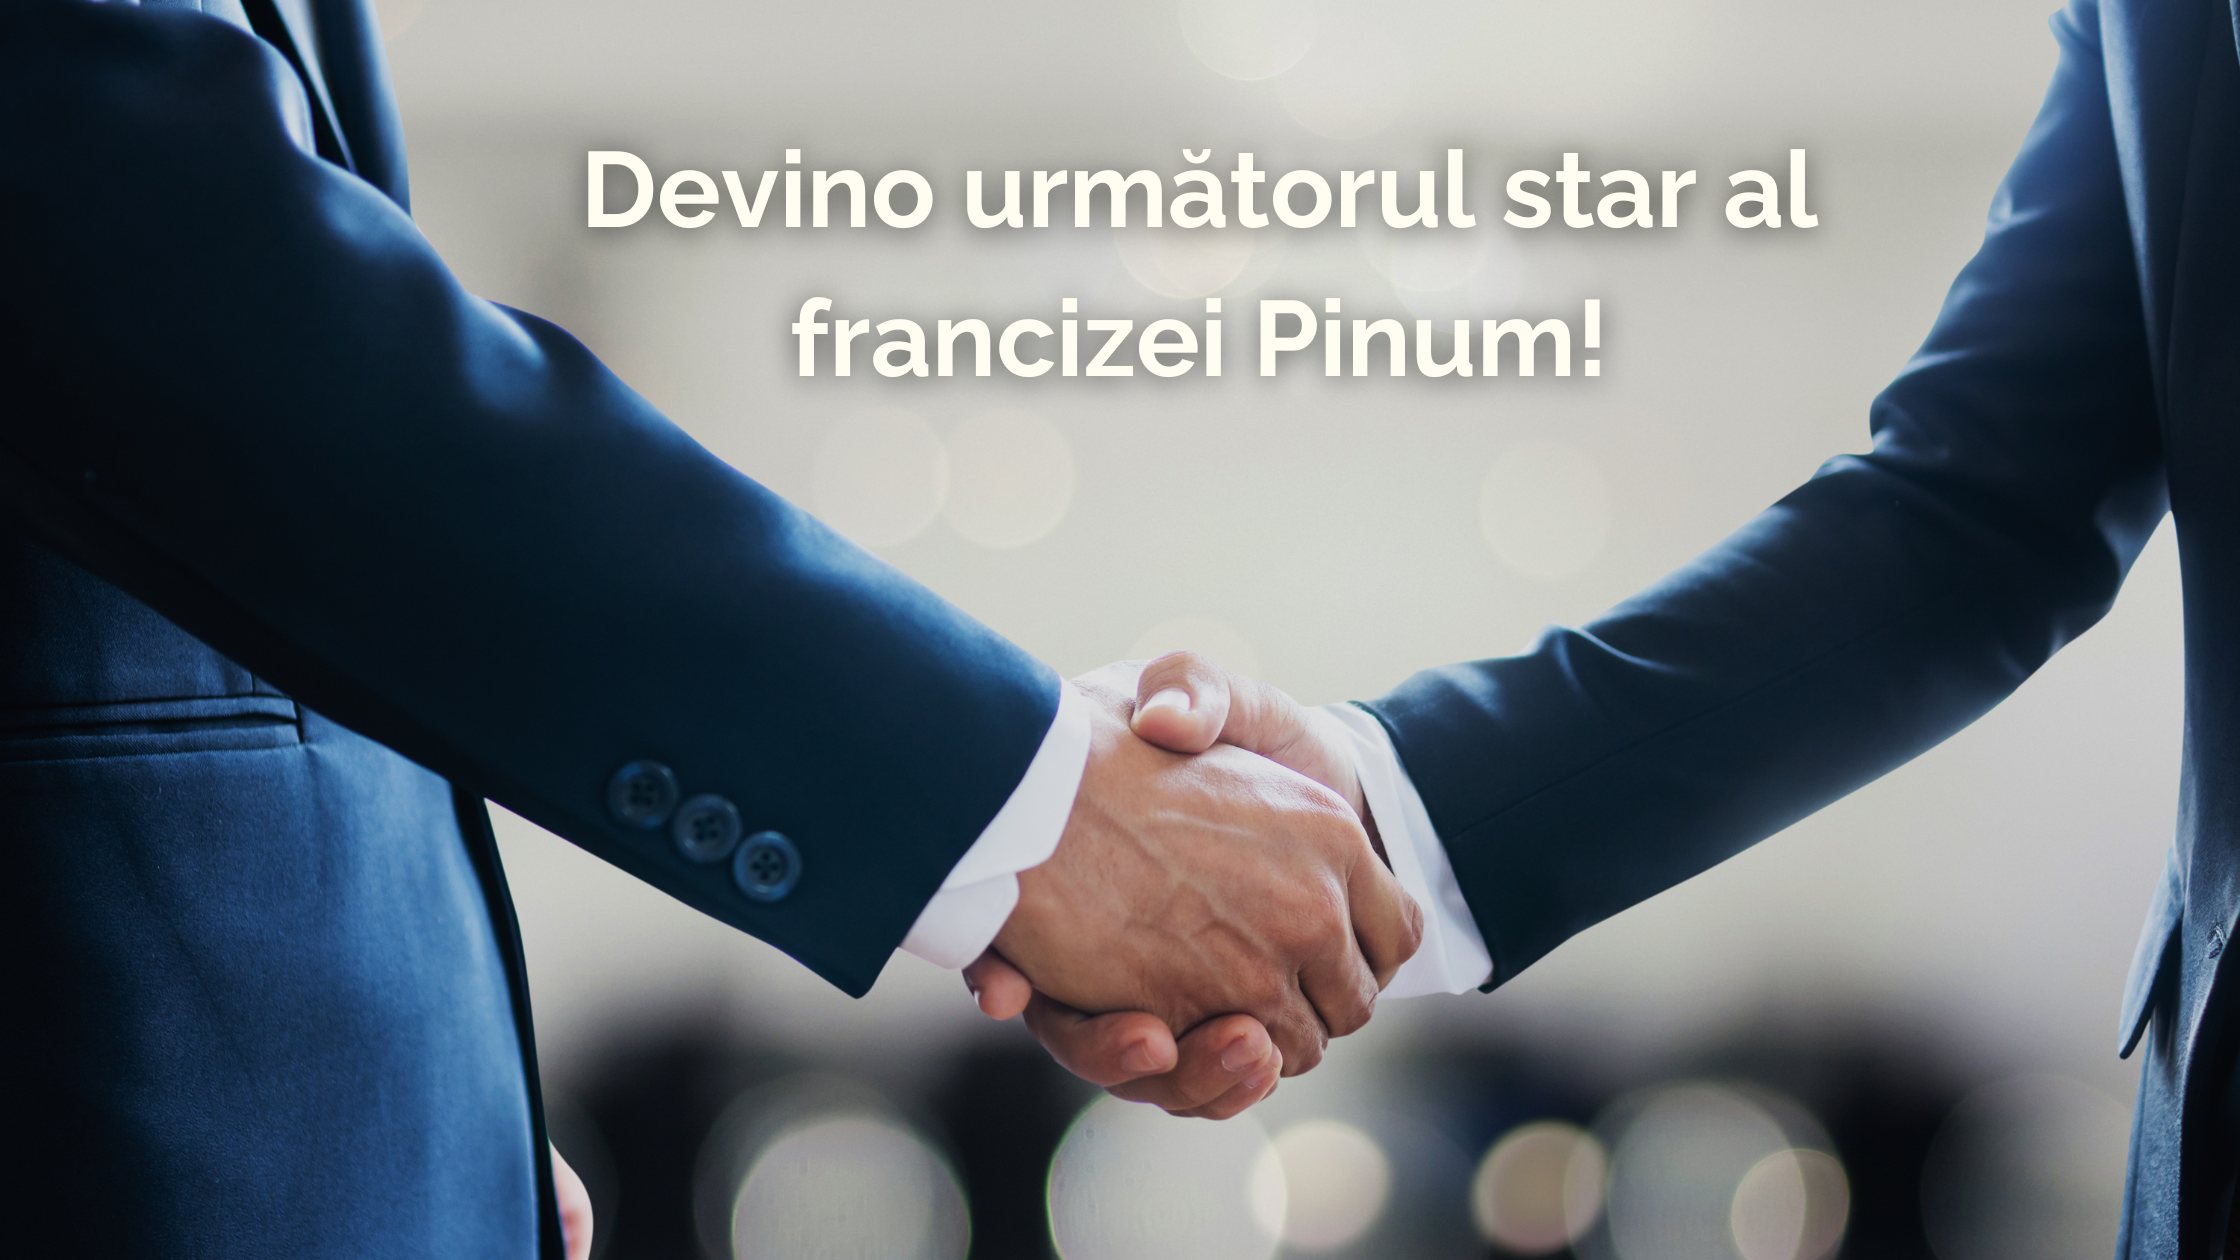 Francesco Curcio, CEO Pinum, despre franciza Pinum: avantaje și beneficii pentru antreprenorii locali, povești de succes din franciză și profilul candidatului ideal.